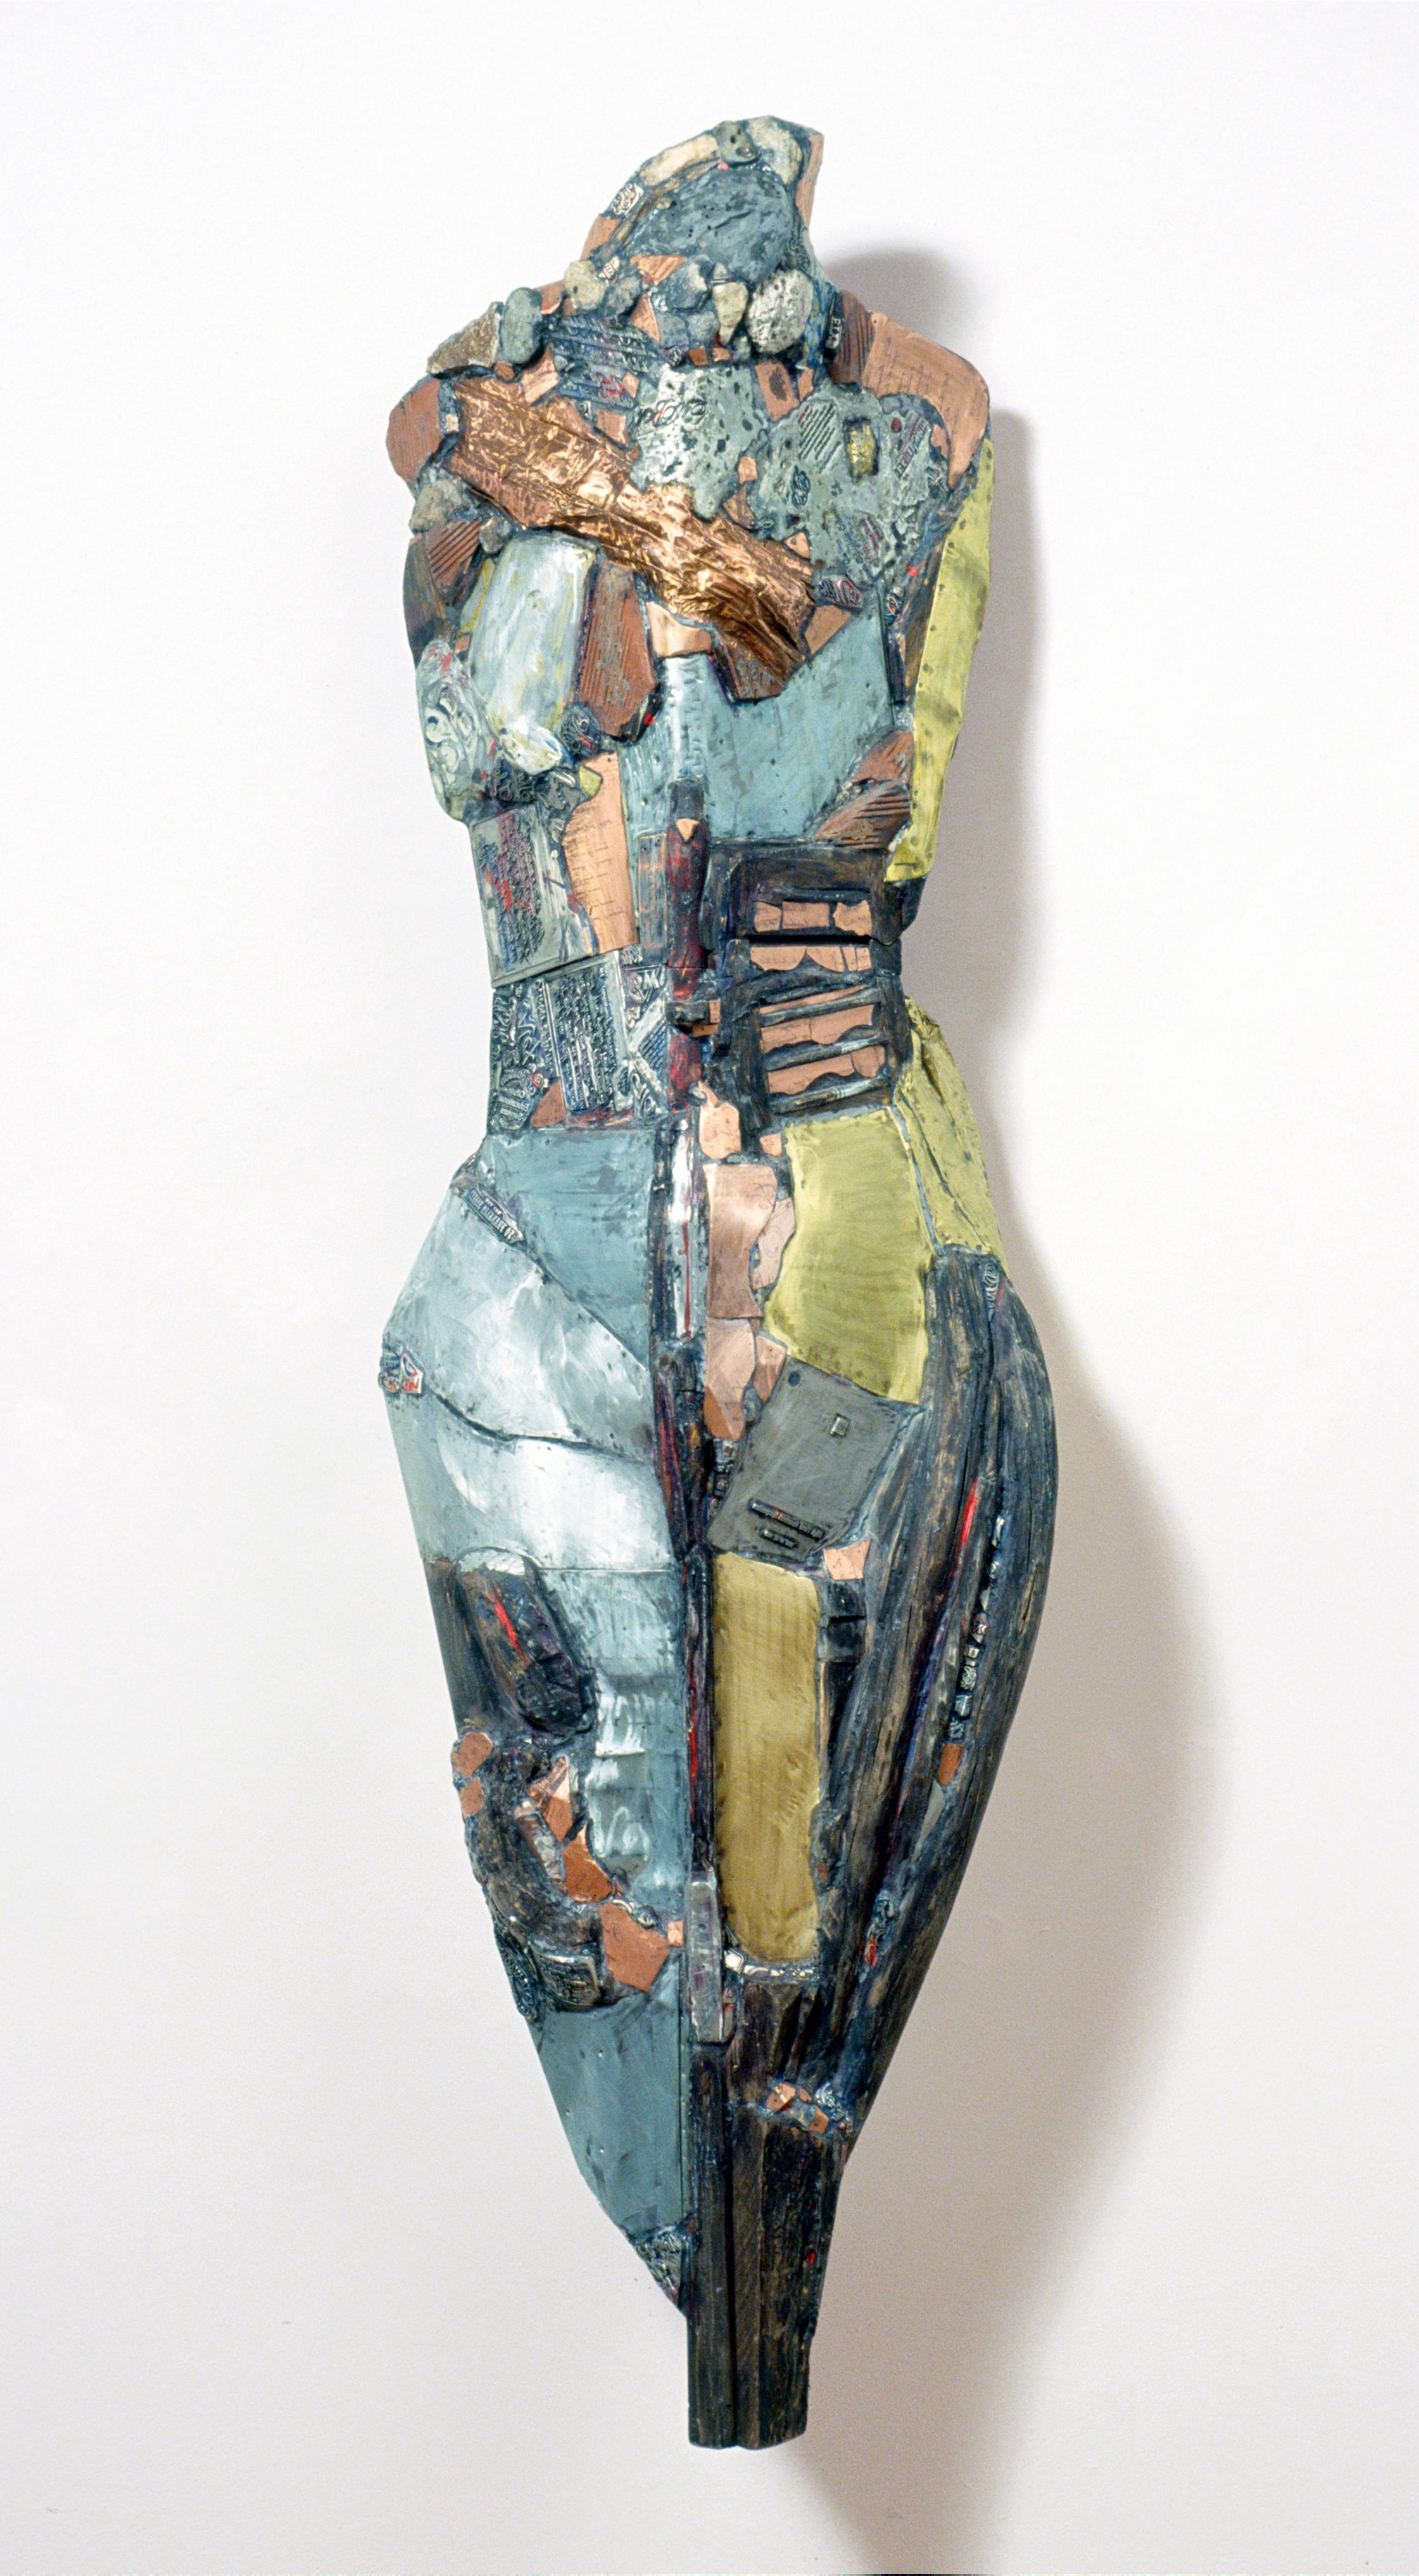 Linda Stein, Knight of Tomorrow 542 – Zeitgenössische Metallsteinholz-Skulptur

Linda Stein begann ihre Knights of Protection-Serie, nachdem sie nach dem 11. September 2001 gezwungen war, ihr Studio in Downtown New York für ein Jahr zu räumen.